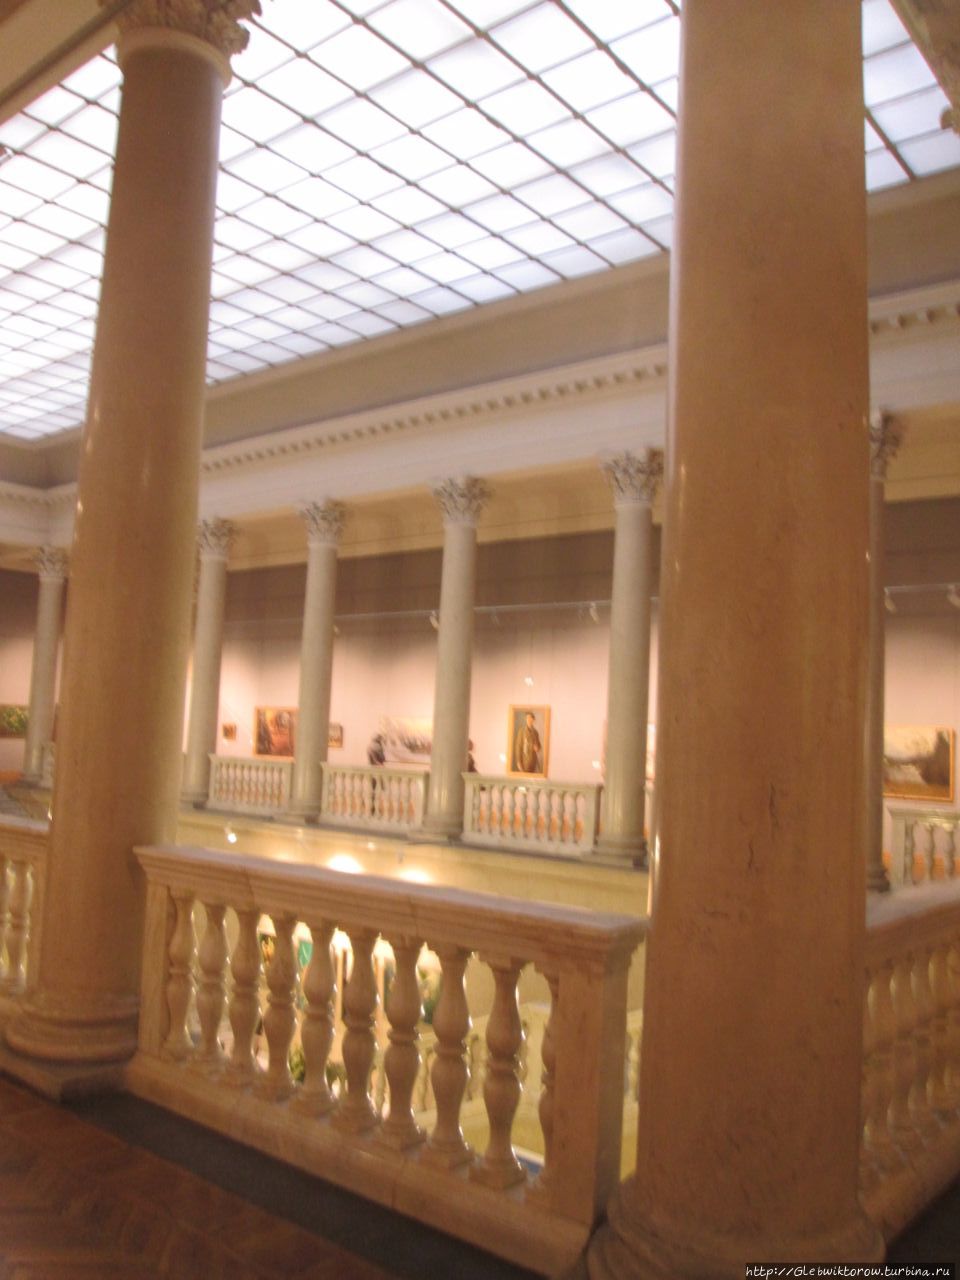 Национальный художественный музей Минск, Беларусь